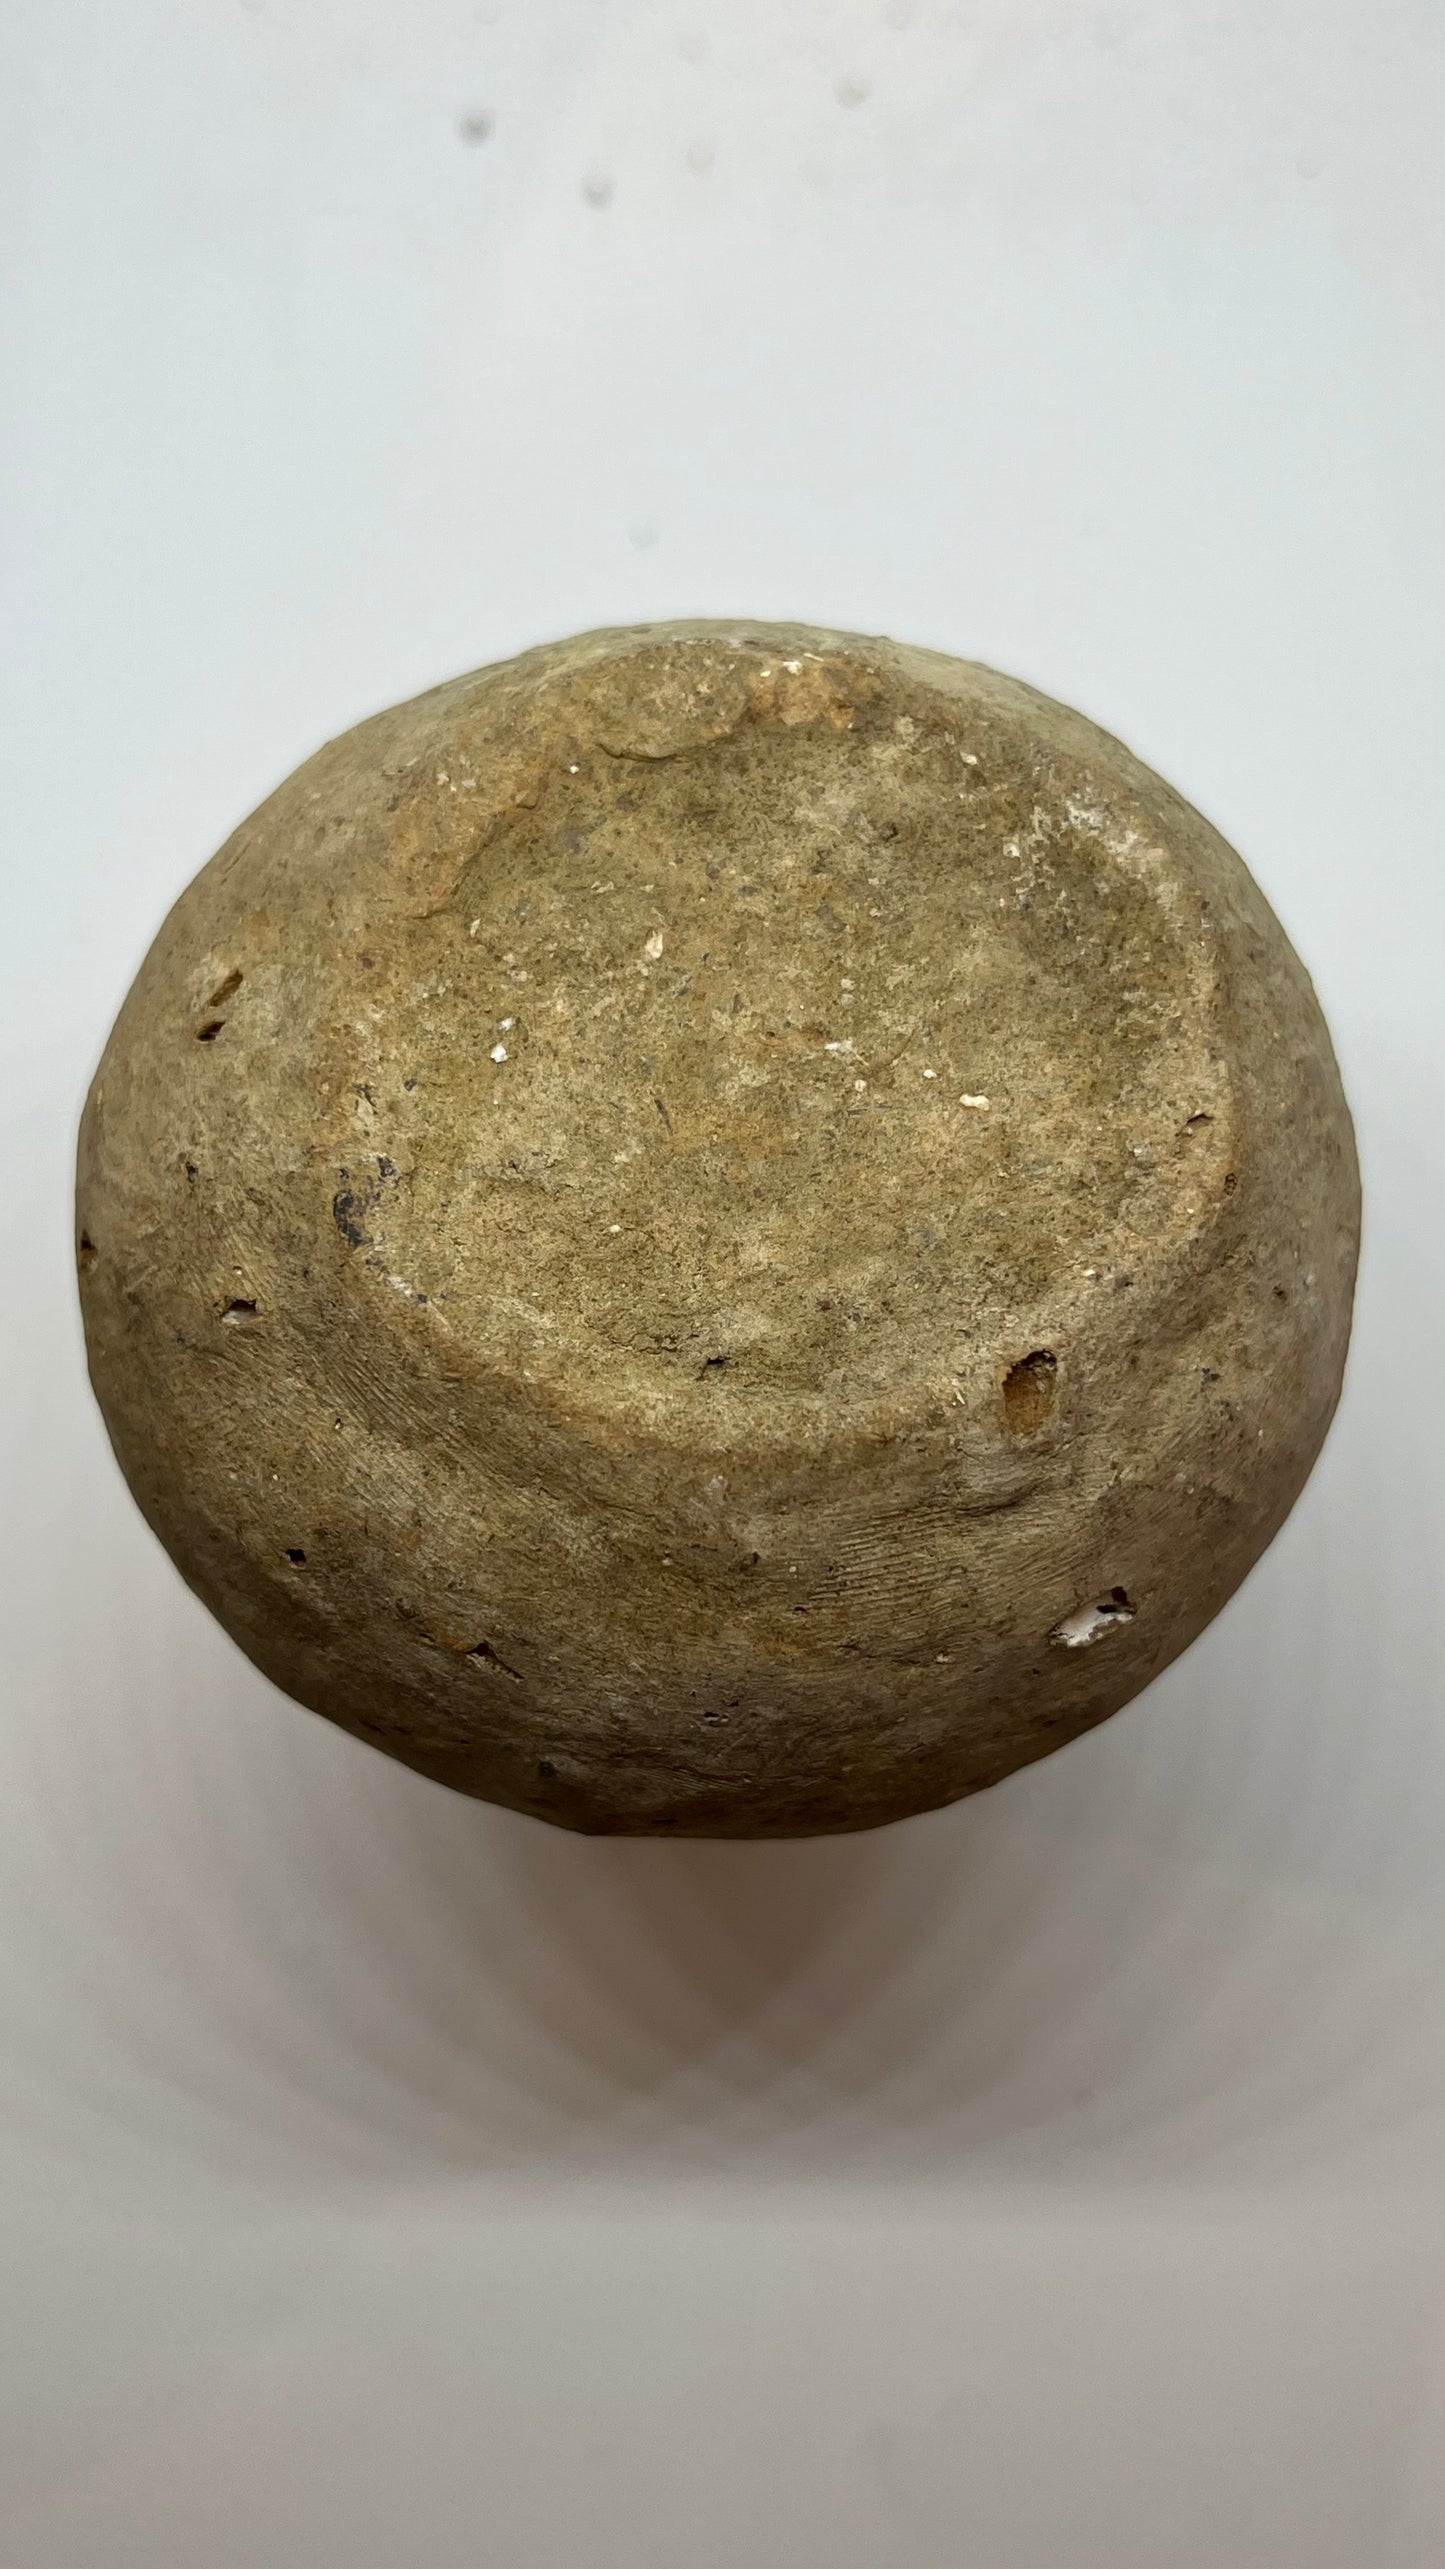 Authentic Ancient Roman Oil Jar